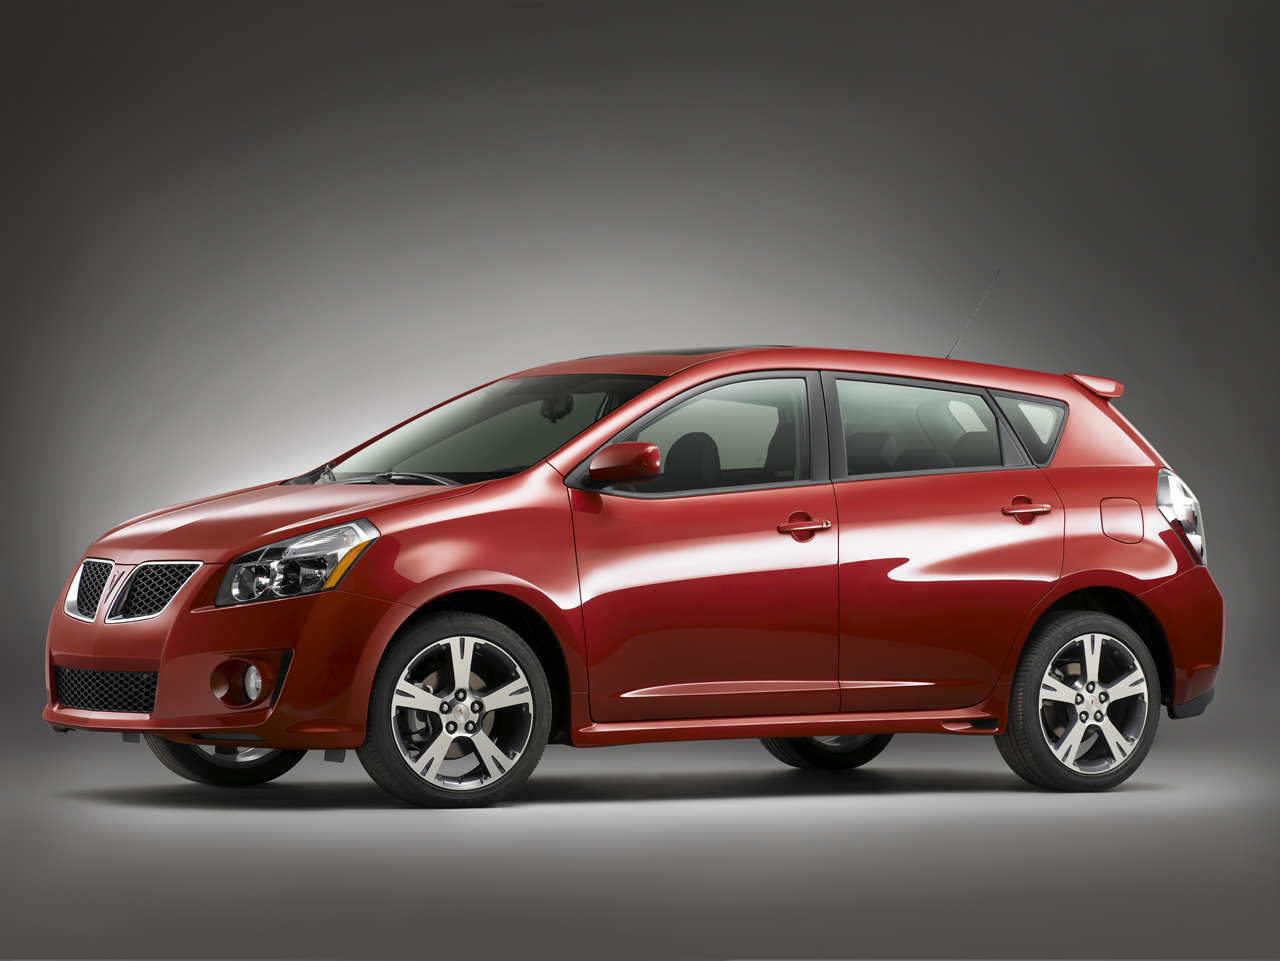 Pontiac Vibe Hatchback: Models, Generations and Details | Autoblog